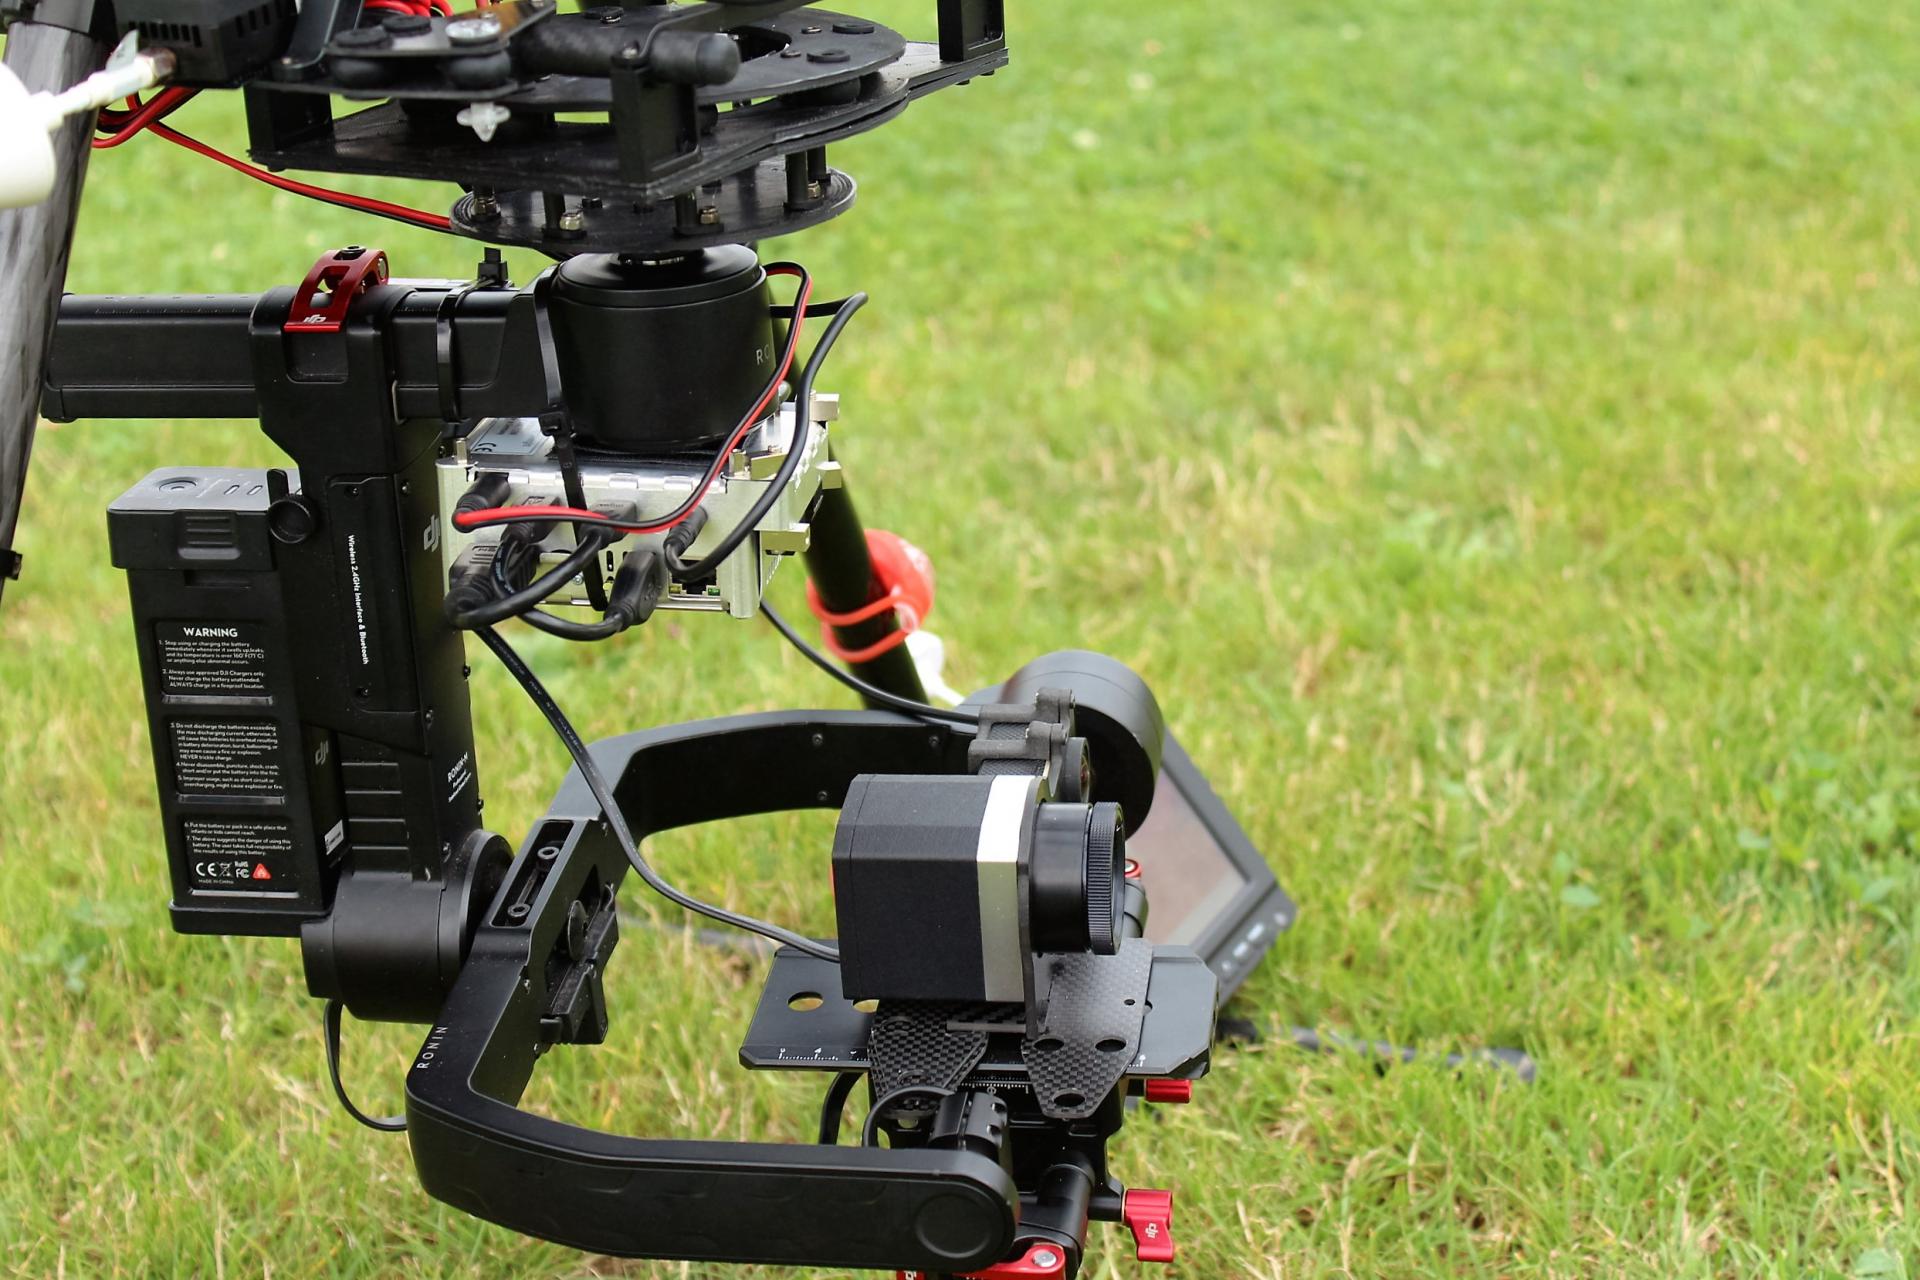 Drones caméra pour prendre des photos ou filmer sur smartphone